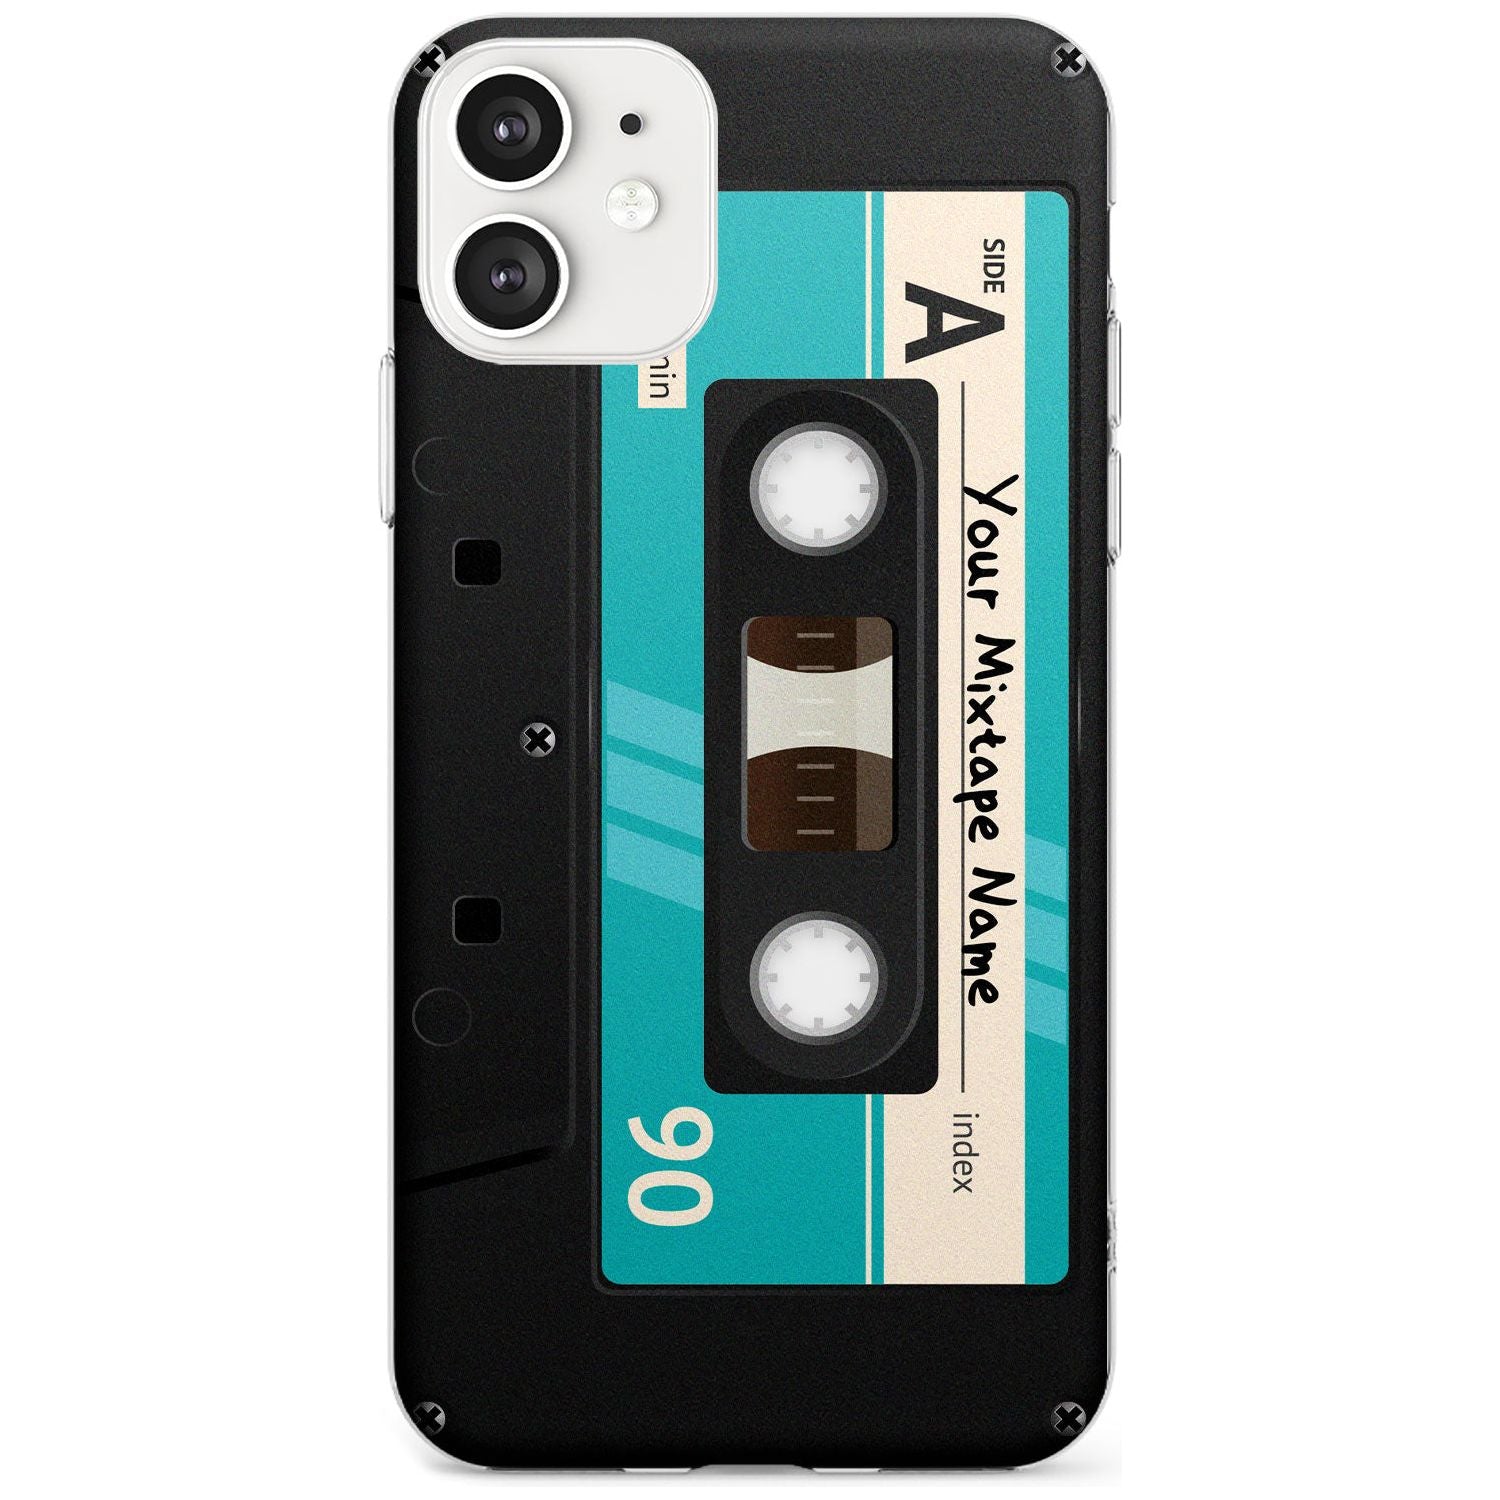 Dark Cassette Black Impact Phone Case for iPhone 11